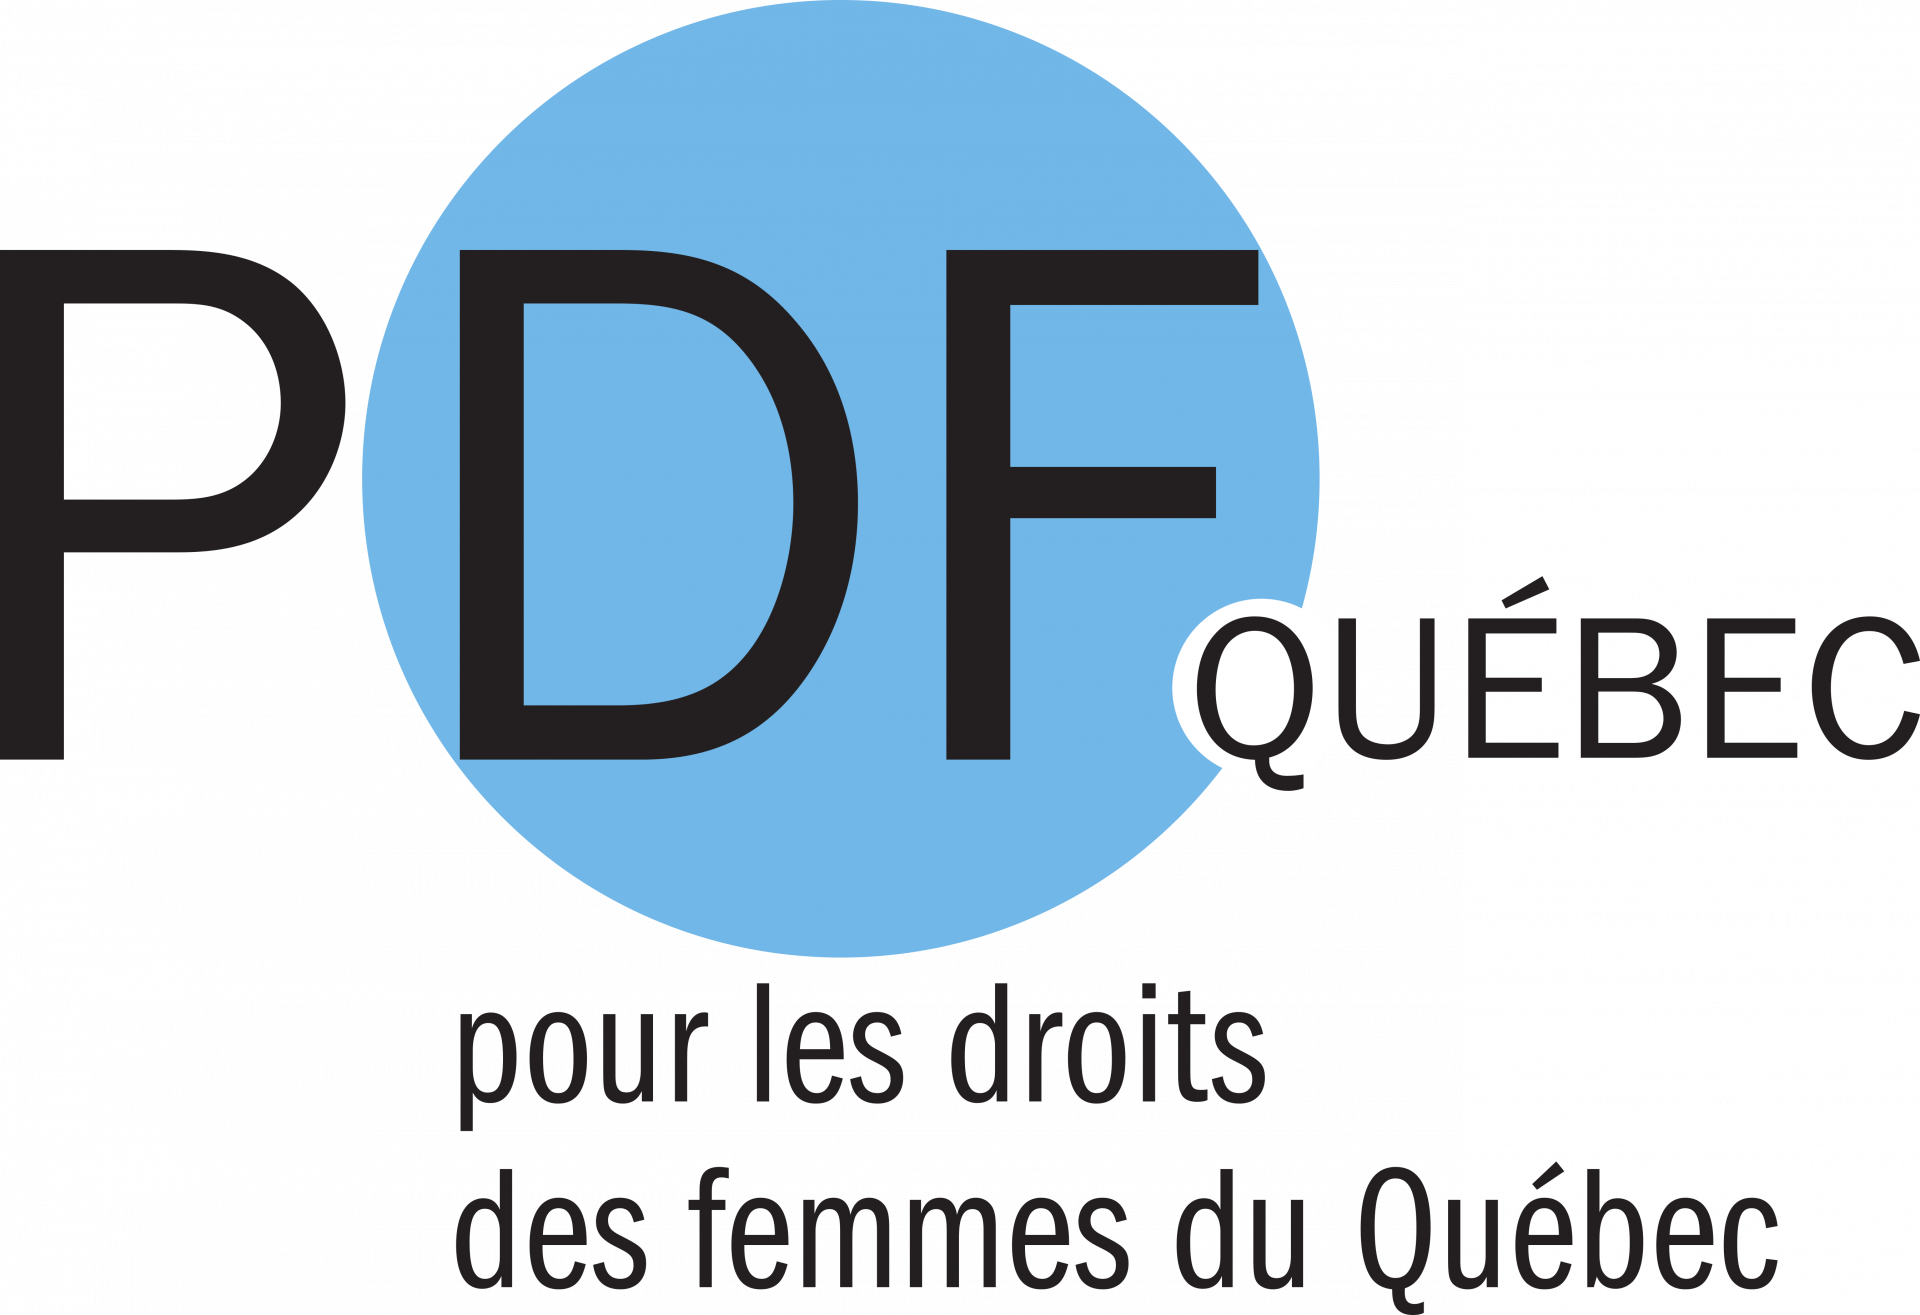 La Directive du Commissaire CD-100 inquiète PDF Québec quant aux transferts des hommes s’autoidentifiant comme femmes vers les prisons pour femmes.